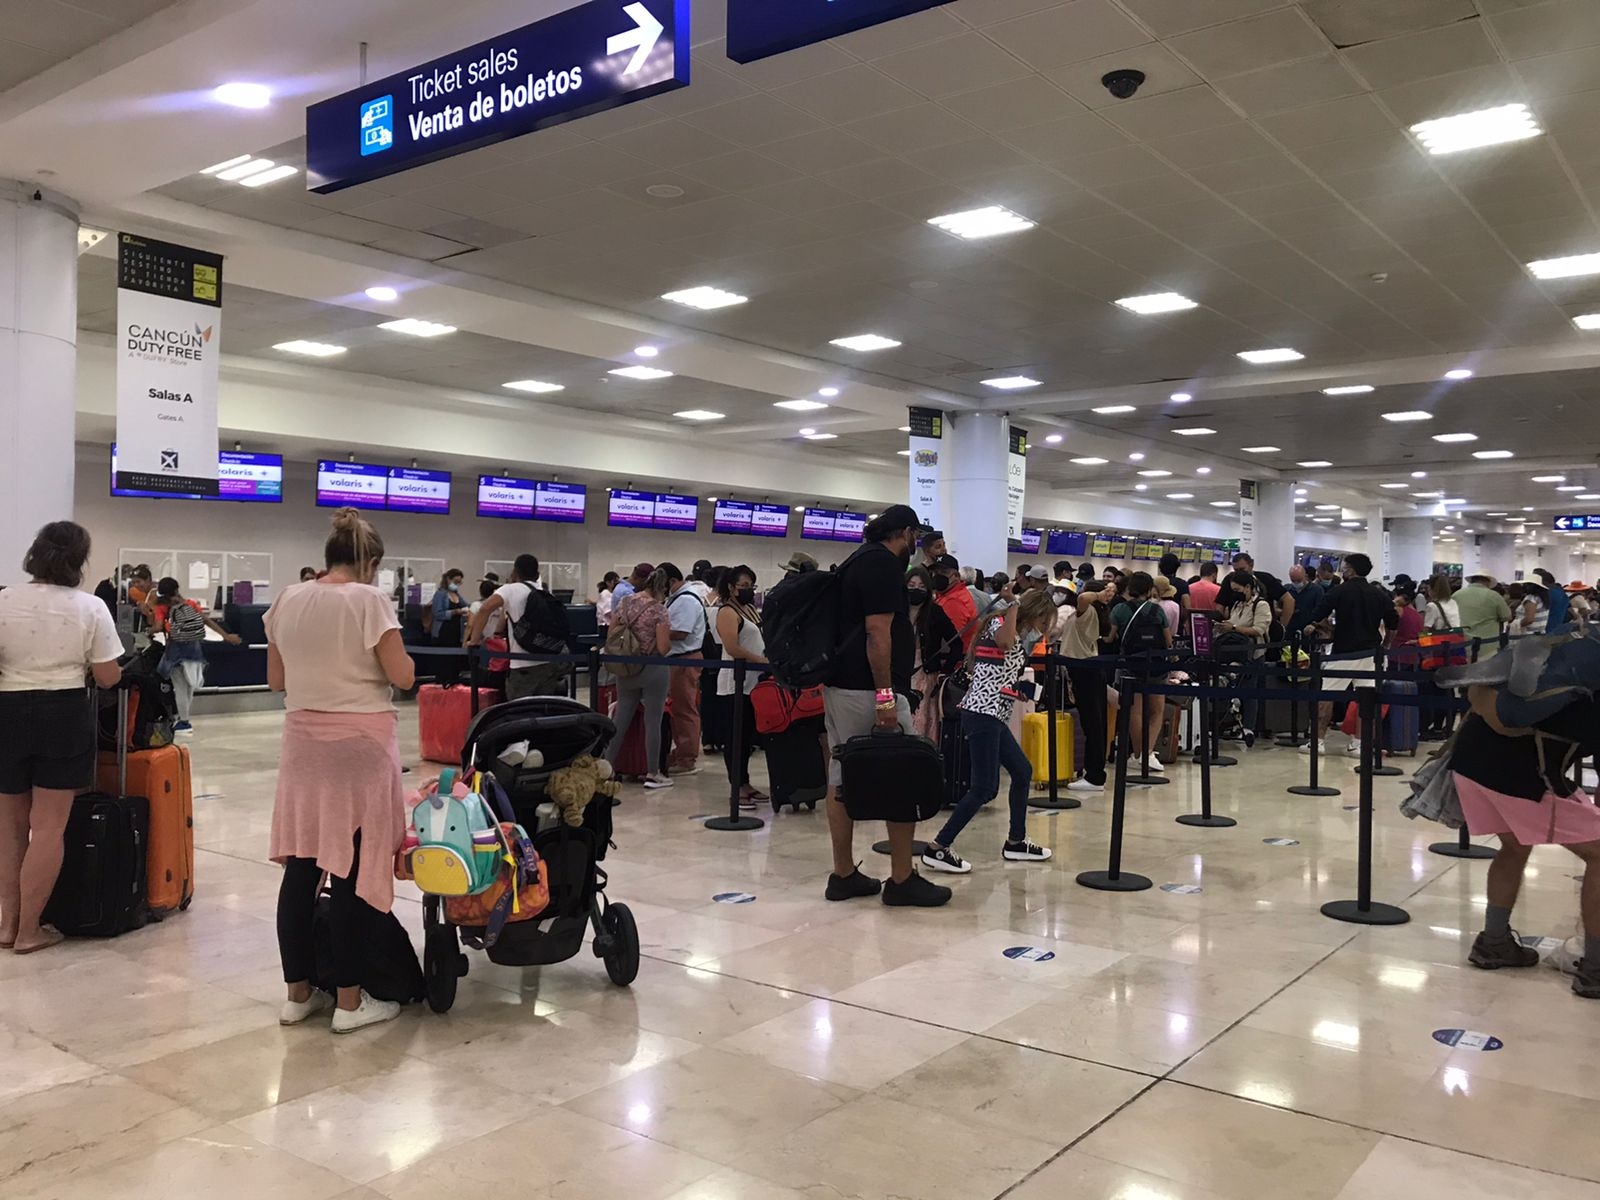 El aeropuerto de Cancún es uno de los que más tráfico registra en México, sólo por detrás del recito aéreo 'Benito Juárez' en la CDMX